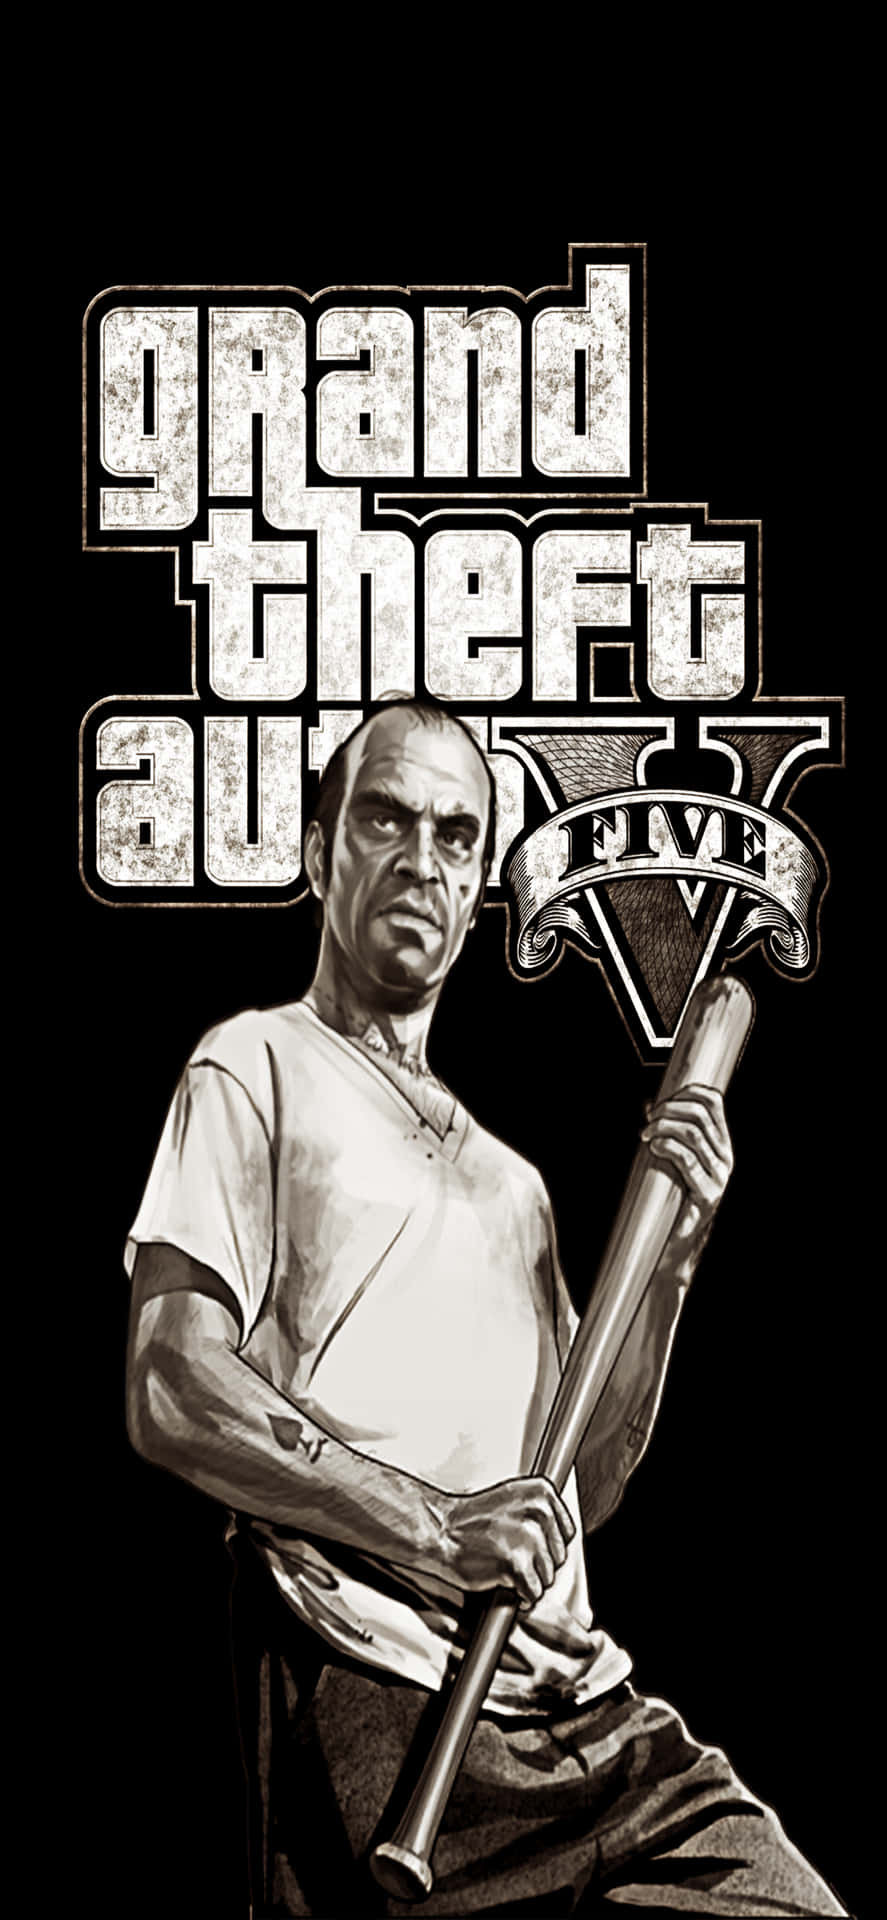 Iphonexs Max Grand Theft Auto V Bakgrund Trevor Hållande En Baseballträ.